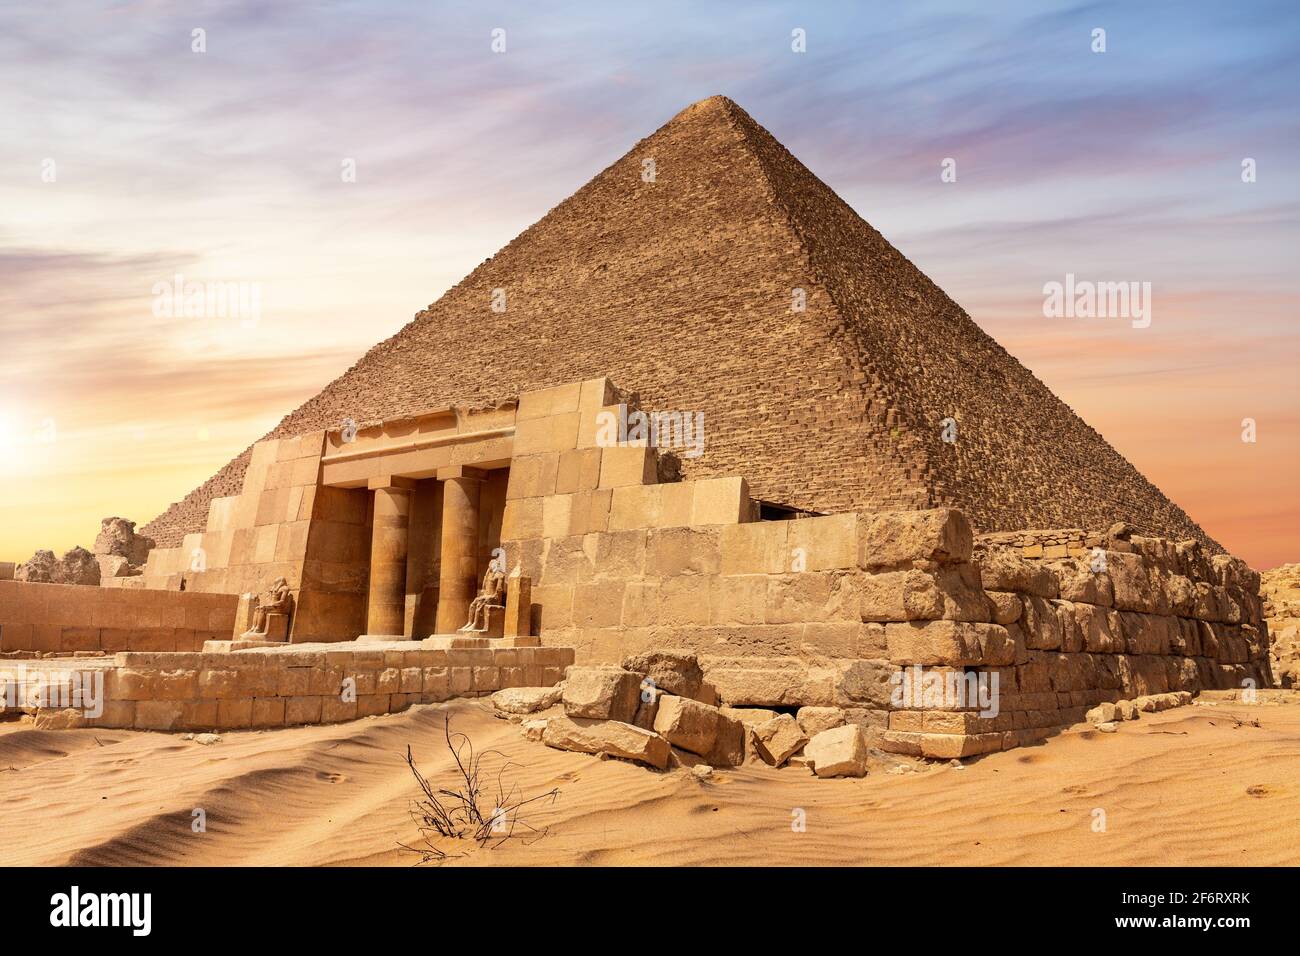 La pyramide de Kheops et l'entrée du temple, Giza, Egypte. Banque D'Images